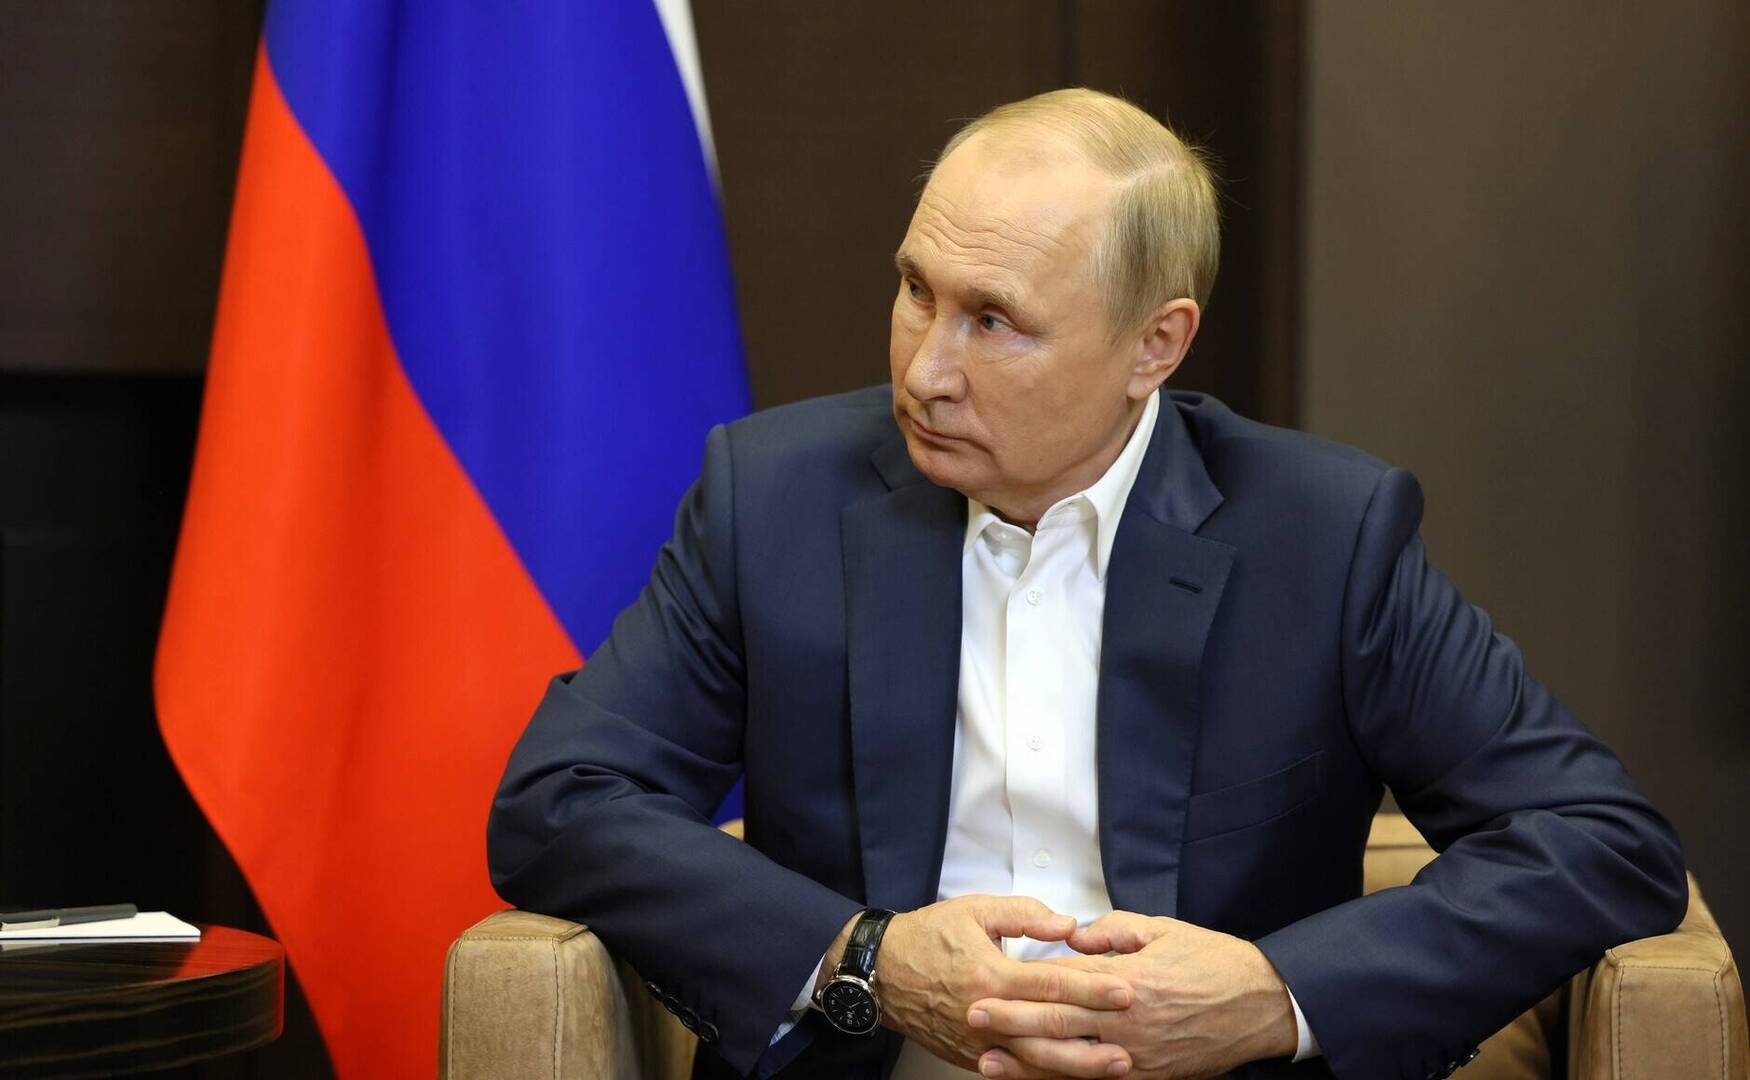 توكاييف يشير إلى زيارة هامة مرتقبة لبوتين إلى كازاخستان